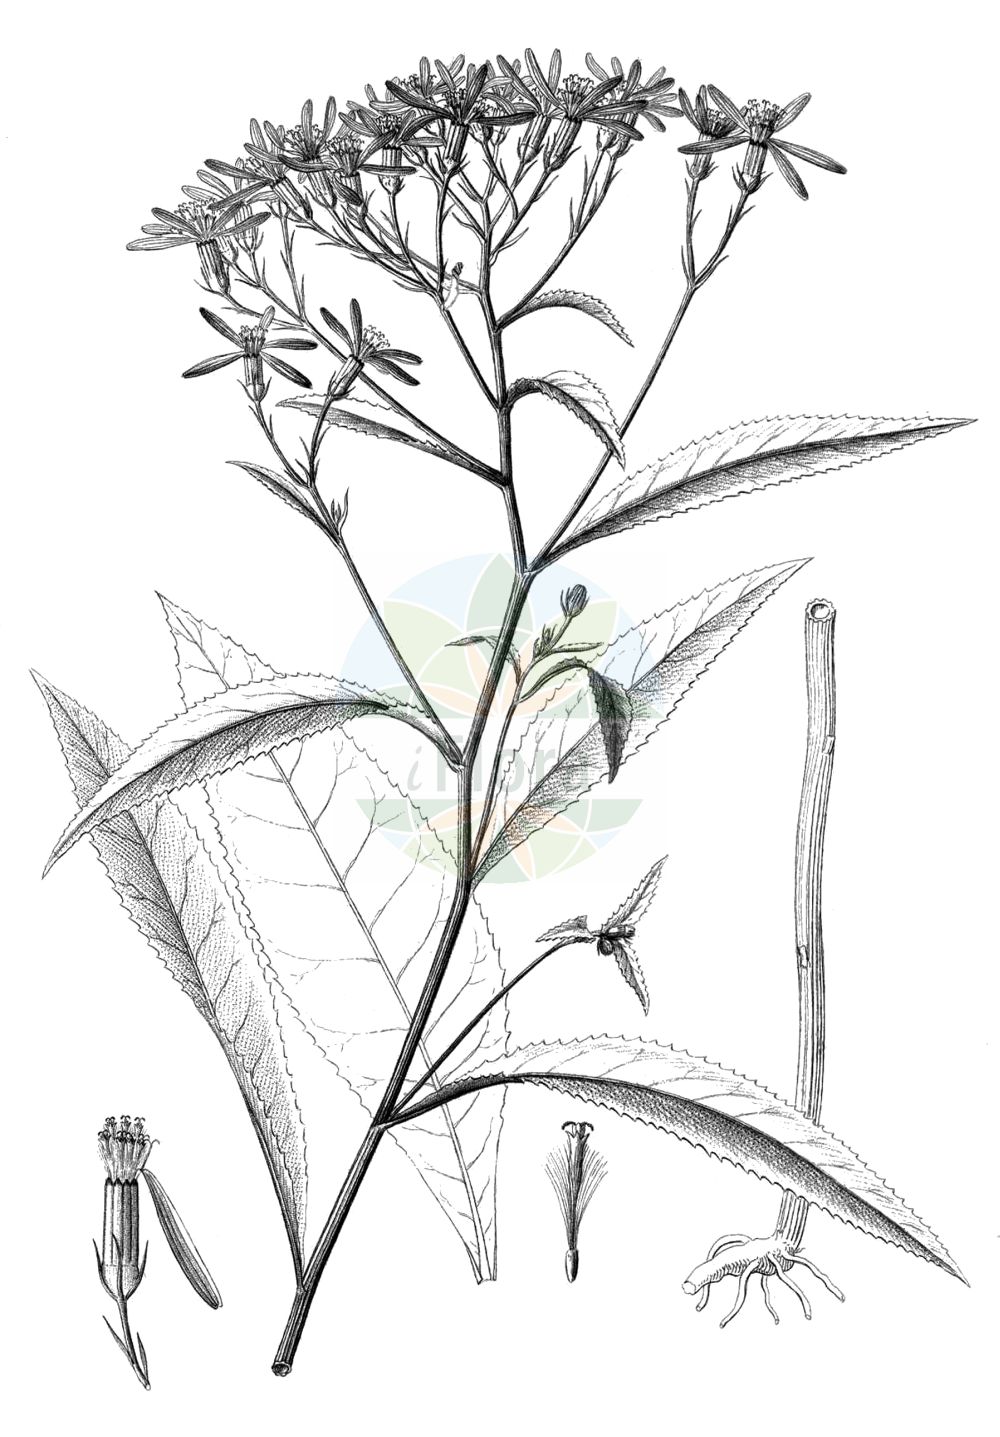 Historische Abbildung von Senecio ovatus (Fuchs' Greiskraut - Wood Ragwort). Das Bild zeigt Blatt, Bluete, Frucht und Same. ---- Historical Drawing of Senecio ovatus (Fuchs' Greiskraut - Wood Ragwort). The image is showing leaf, flower, fruit and seed.(Senecio ovatus,Fuchs' Greiskraut,Wood Ragwort,Jacobaea ovata,Senecio fuchsii,Senecio ovatus,Fuchs' Greiskraut,Alpen-Fuchs' Greiskraut,Fuchssches Greiskraut,Gewoehnliches Fuchs' Greiskraut,Wood Ragwort,Senecio,Greiskraut,Ragwort,Asteraceae,Korbblütengewächse,Daisy family,Blatt,Bluete,Frucht,Same,leaf,flower,fruit,seed,Reichenbach (1823-1832))